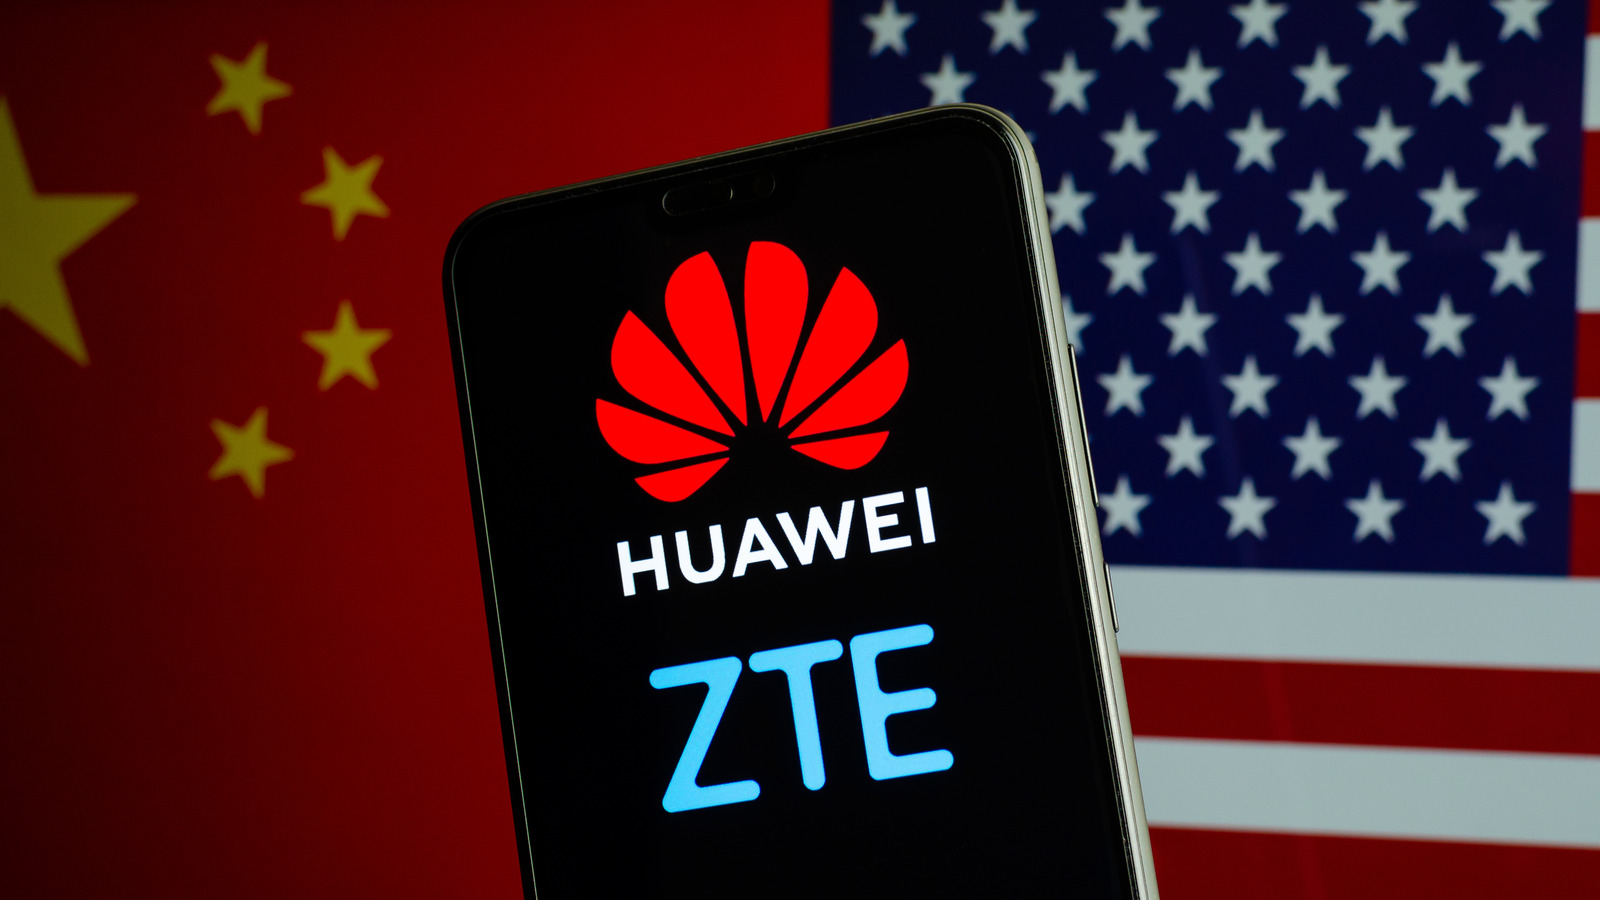 Chính phủ Mỹ đã sẵn sàng cấm tất cả các thiết bị viễn thông trong tương lai do Huawei và ZTE, hai gã khổng lồ công nghệ Trung Quốc, sản xuất khỏi thị trường Mỹ trong một cuộc đàn áp mở rộng nhằm chống lại các nguy cơ an ninh quốc gia từ Trung Quốc. Ảnh: @AFP.